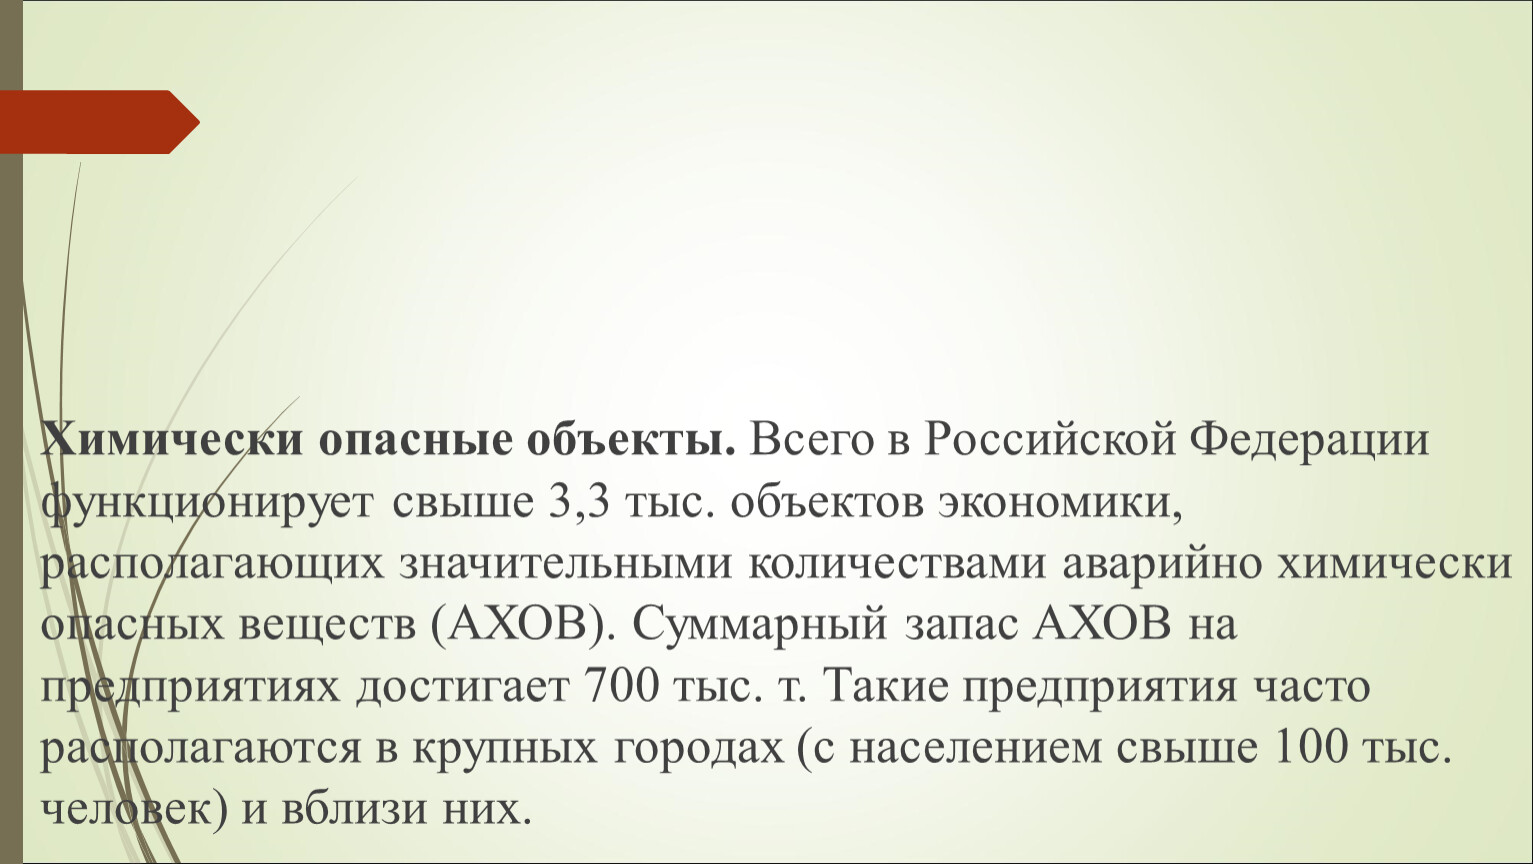 На территории российской федерации функционирует. Функционирует 3,3 тысячи объектов экономики имеющих АХОВ.